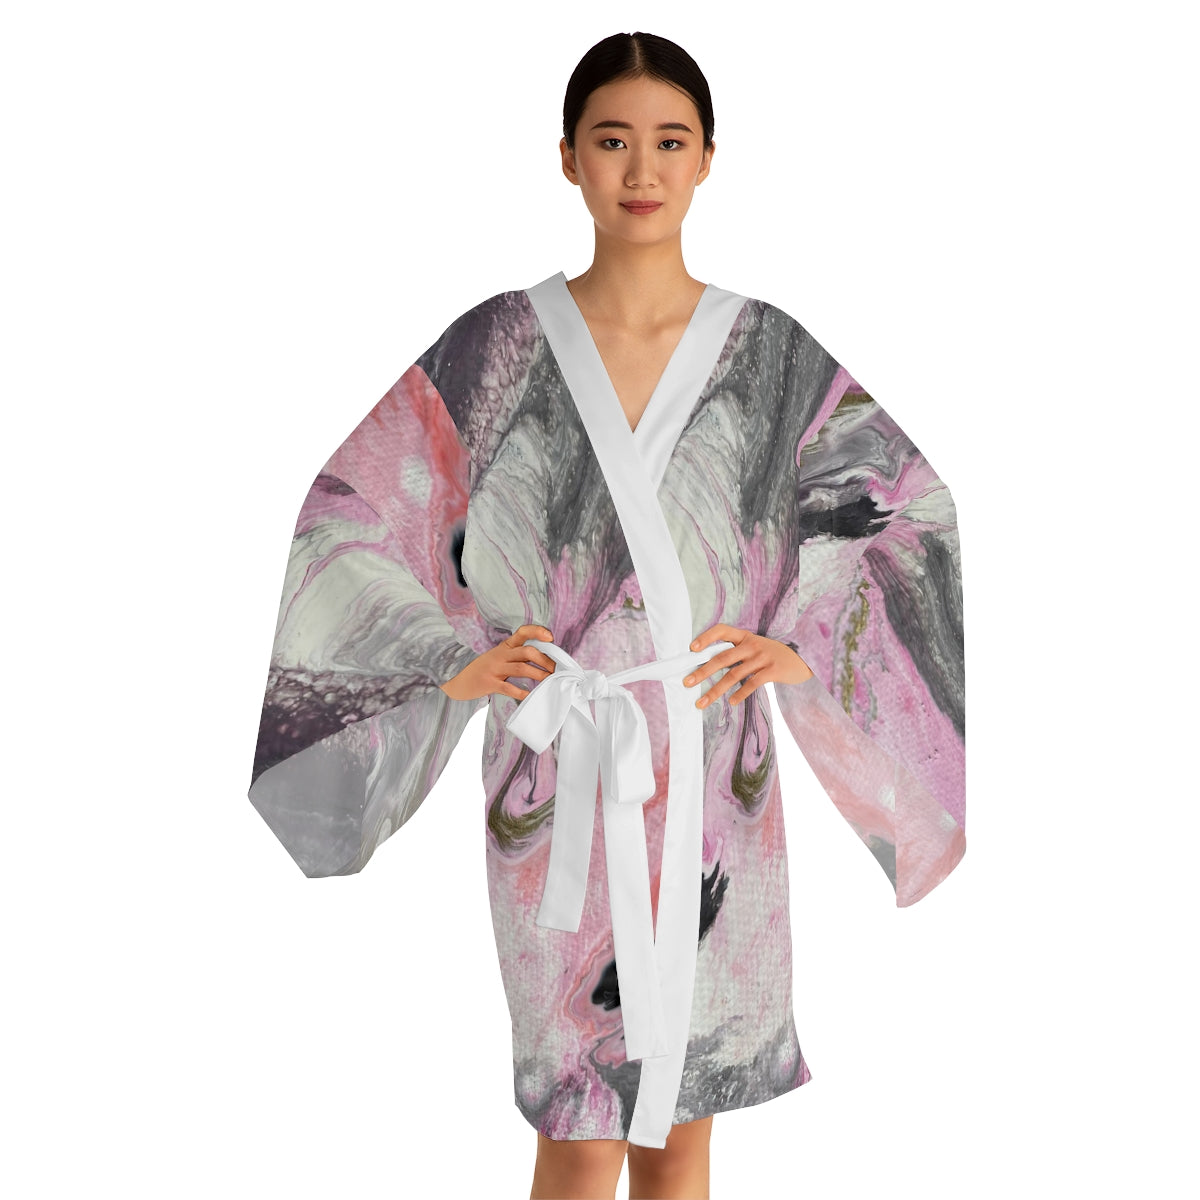 Robe quimono de manga comprida - design rosa escuro e cinza 